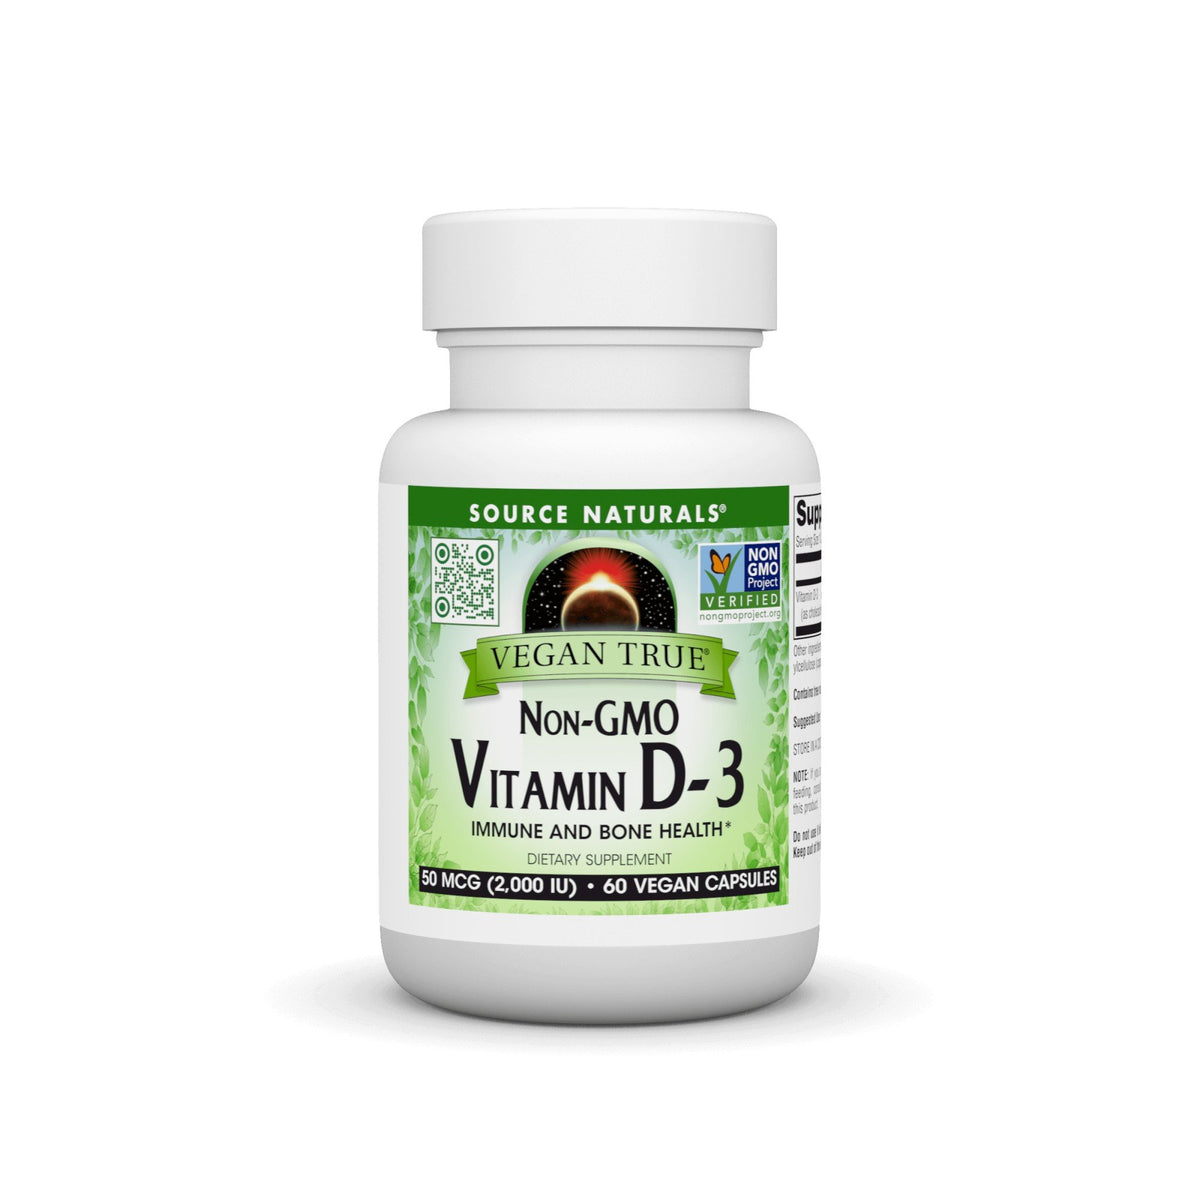 Source Naturals, Inc. Vegan True Non-GMO Vitamin D-3 2,000 IU 60 VegCap